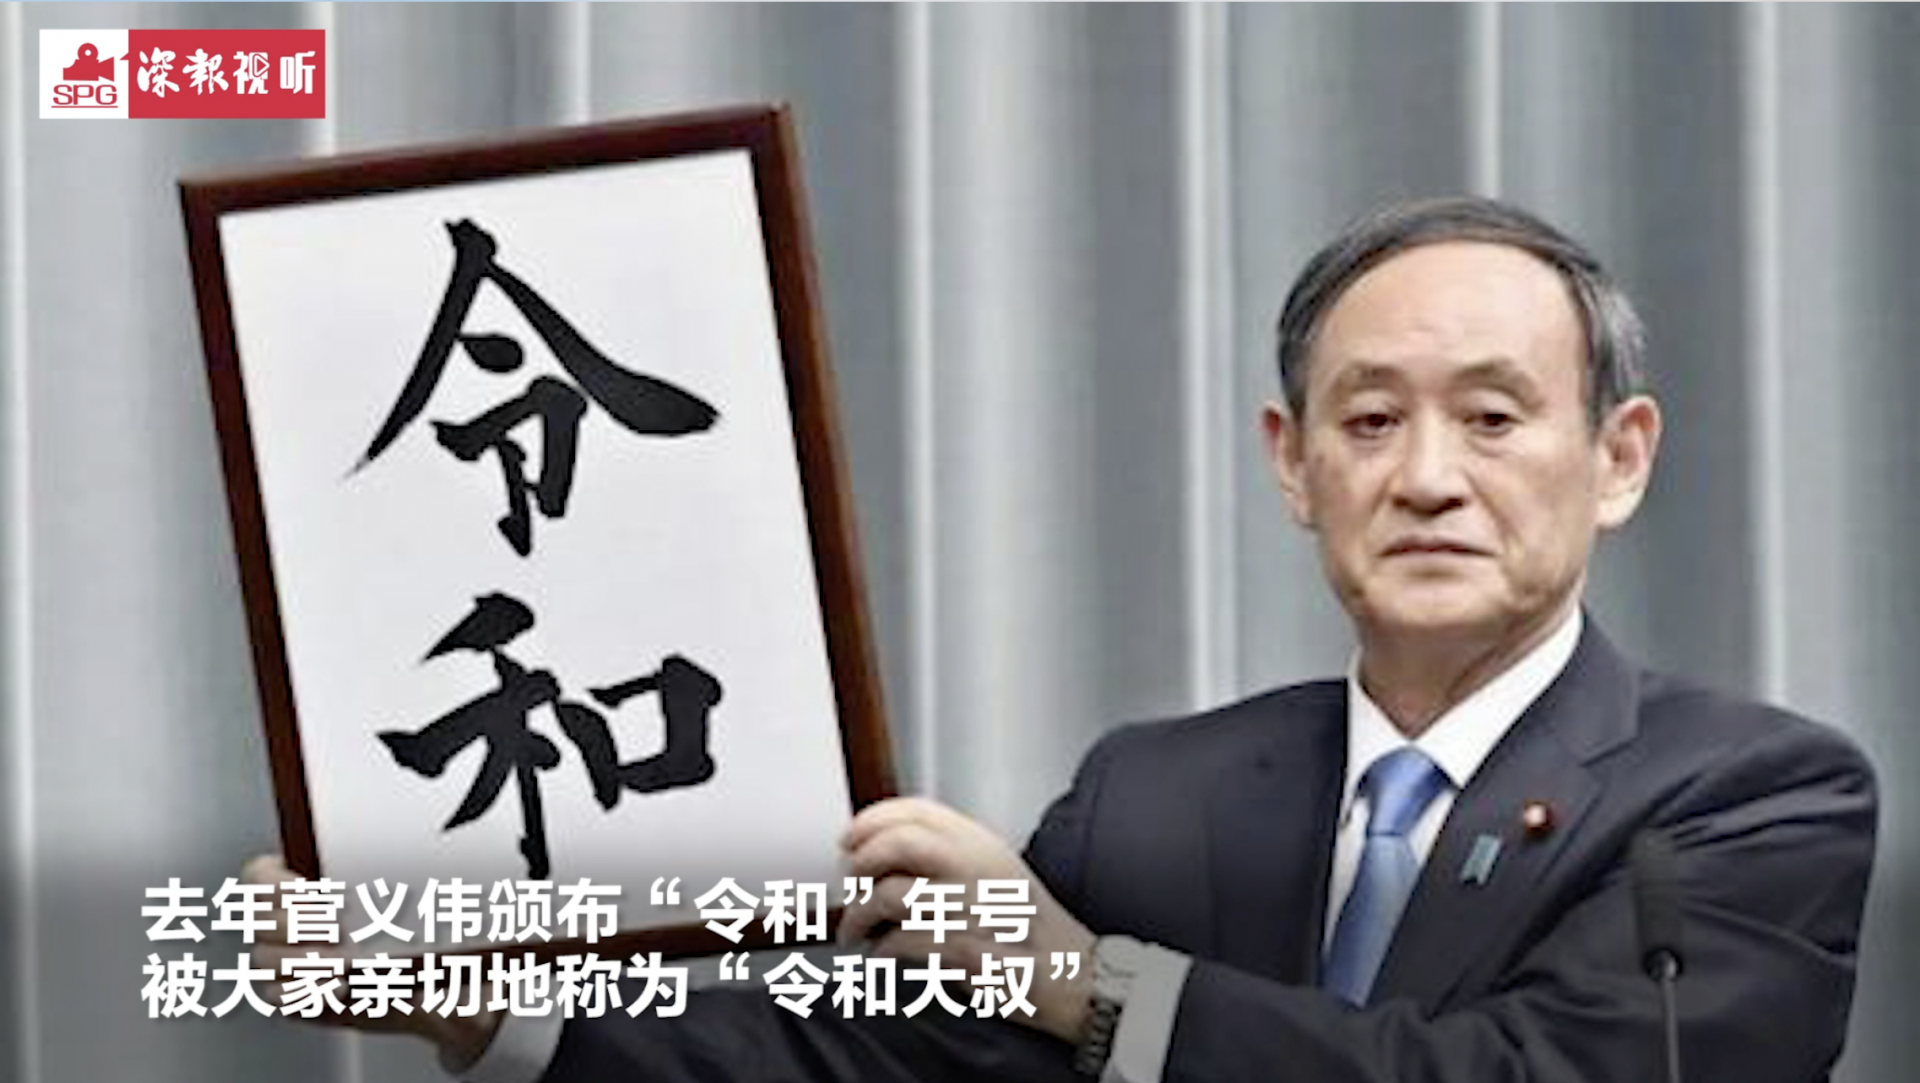 菅义伟当选日本自民党总裁 将成为21世纪以来日本第一位“平民首相”